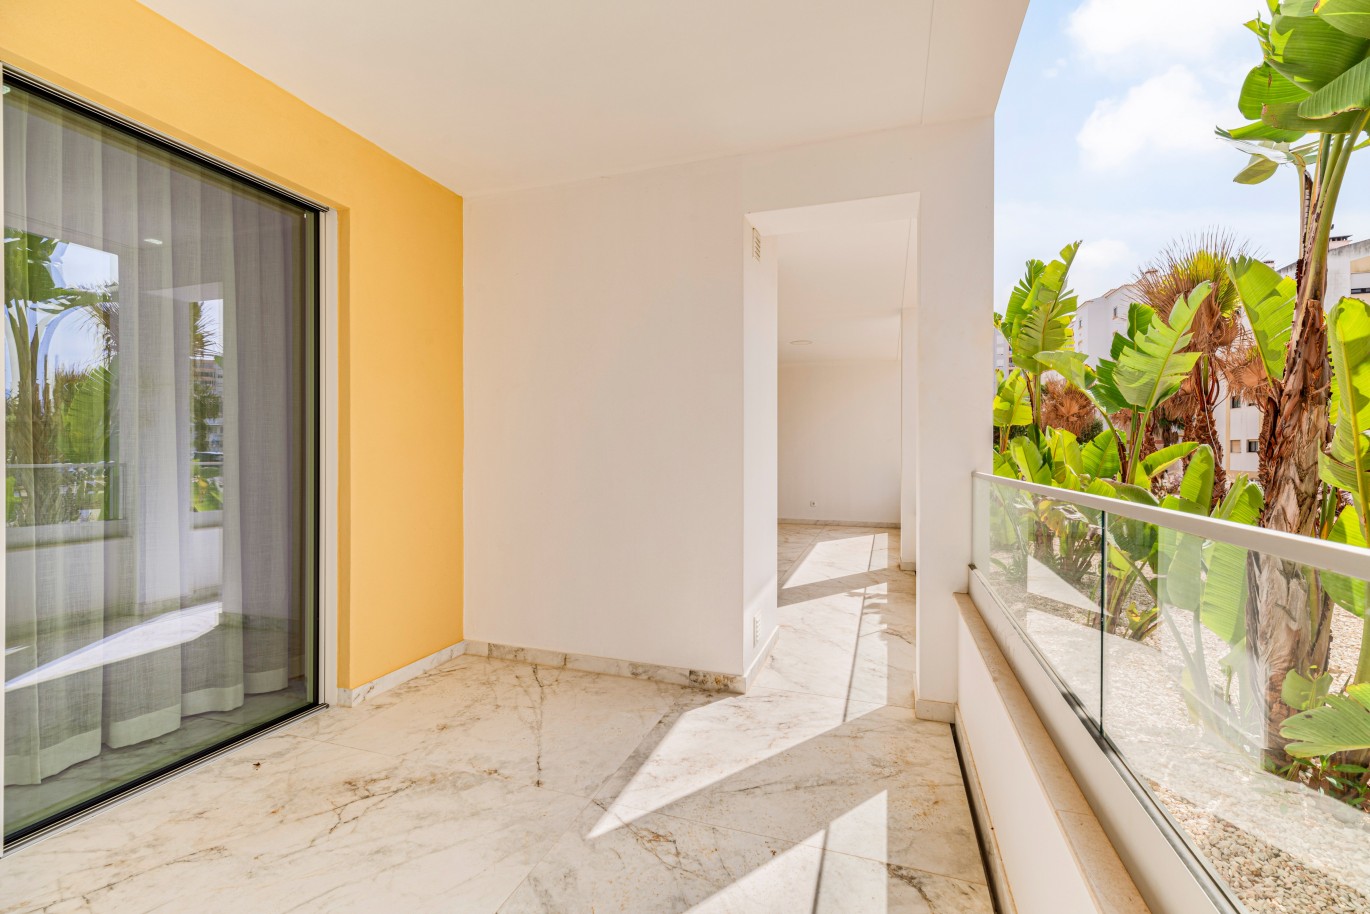 Apartamento, com terraço, para venda, em Lagos, Algarve_237983